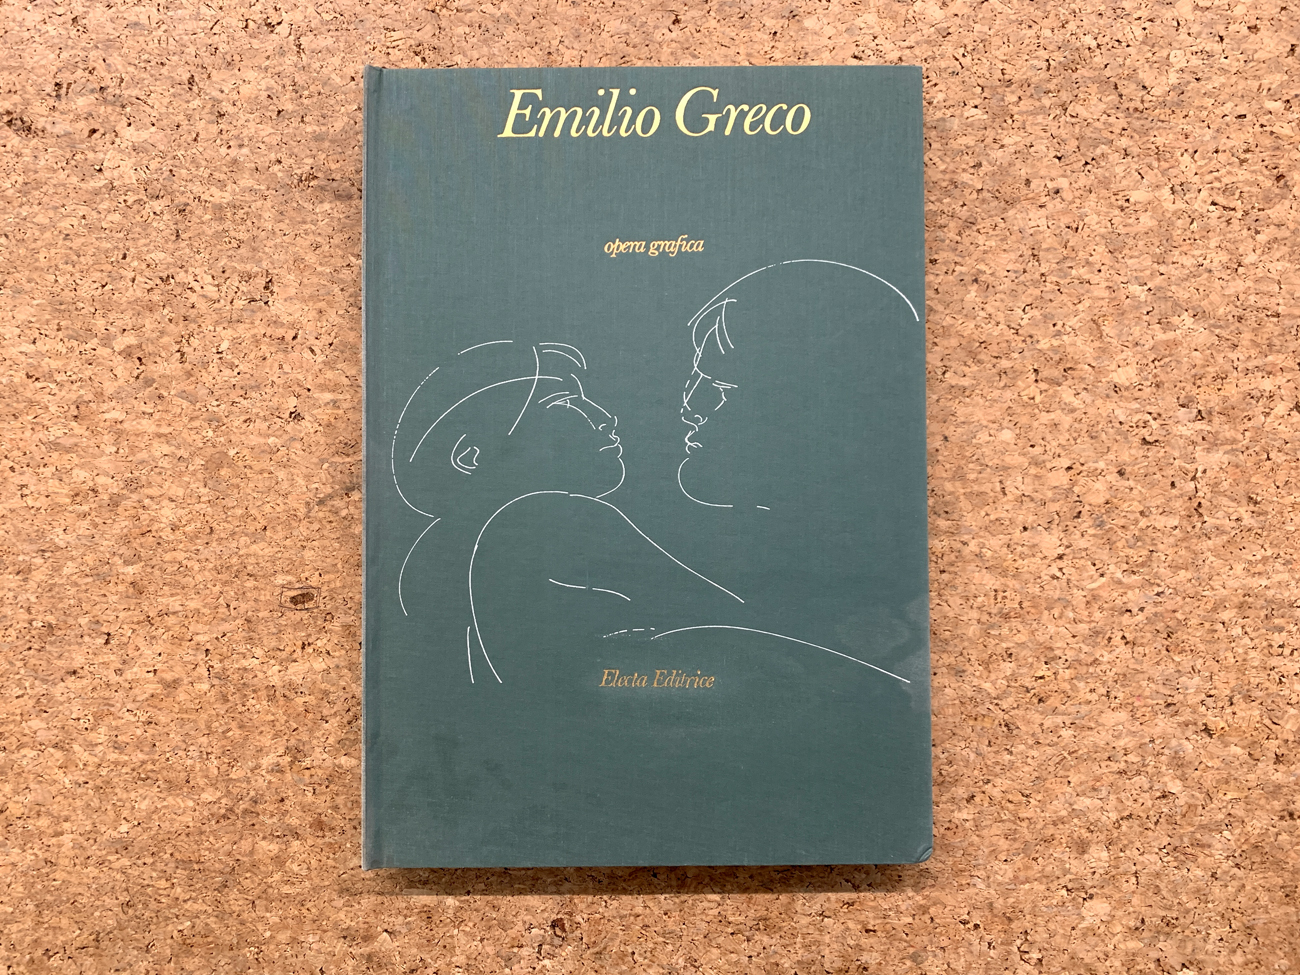 EMILIO GRECO - Emilio Greco. Opera grafica